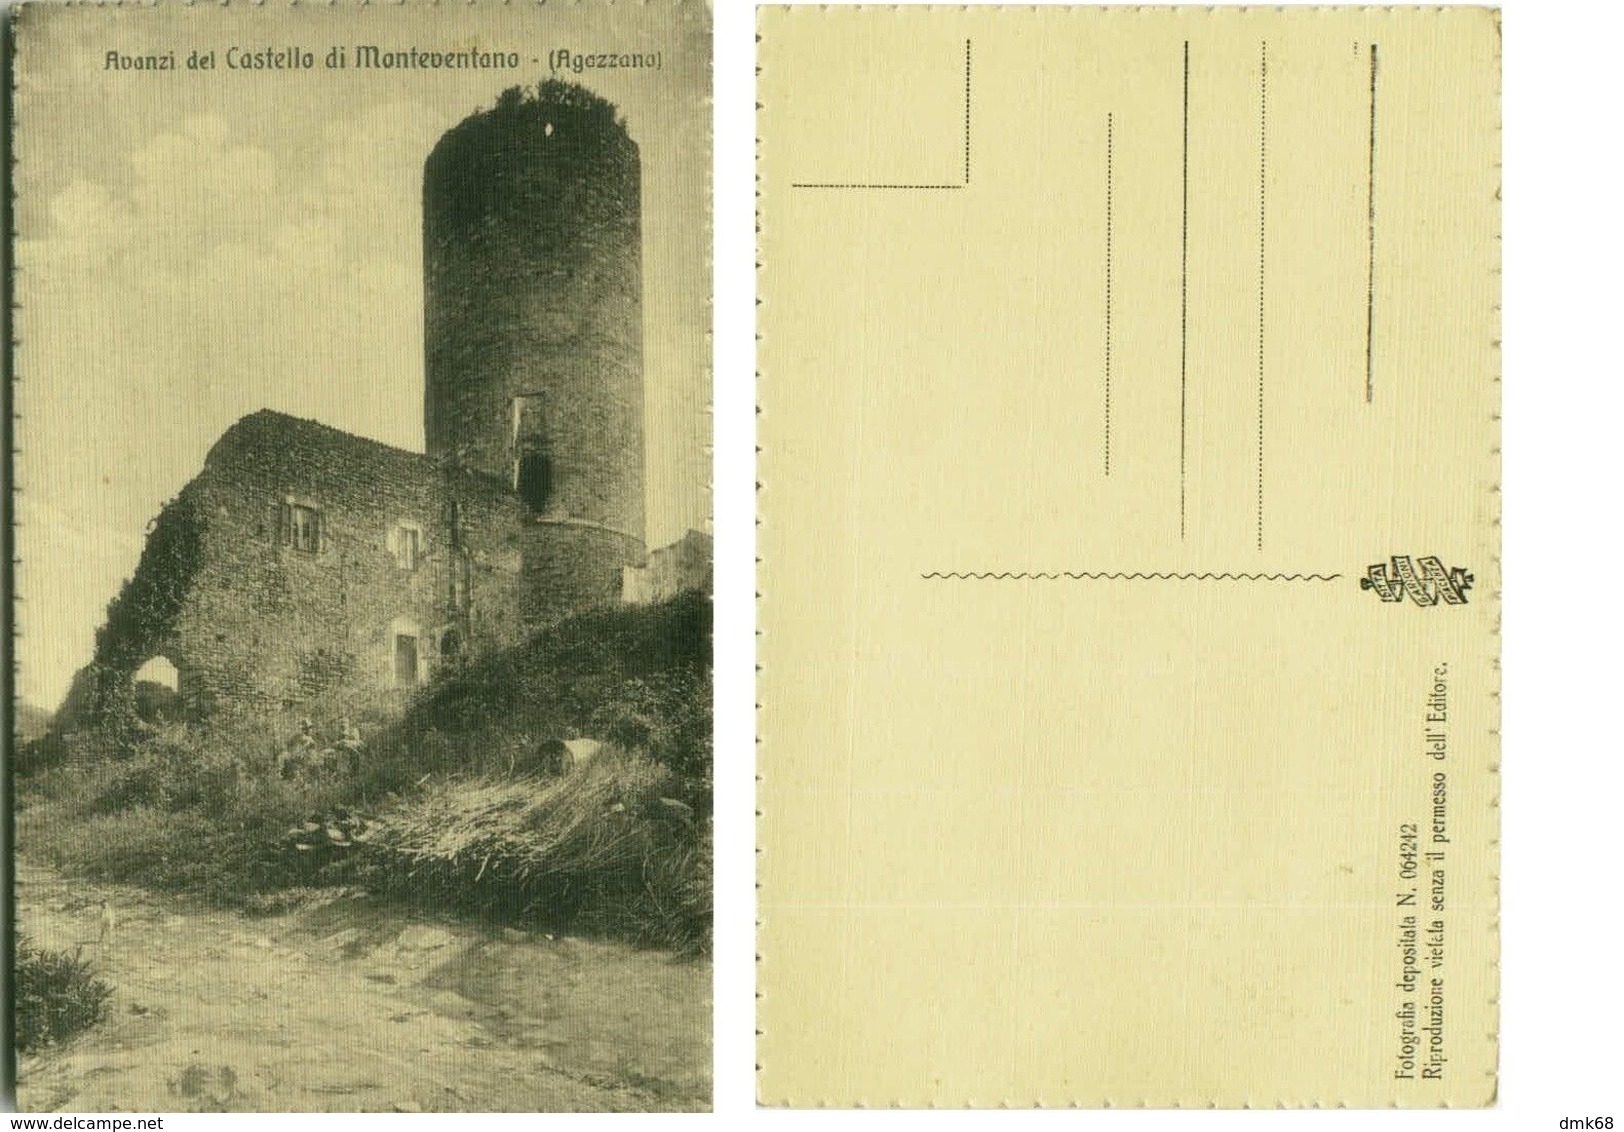 CASTELLO DI MONTEVENTANO ( PIACENZA ) EDIZ. GARIONI - 1920s/30s (1847) - Piacenza